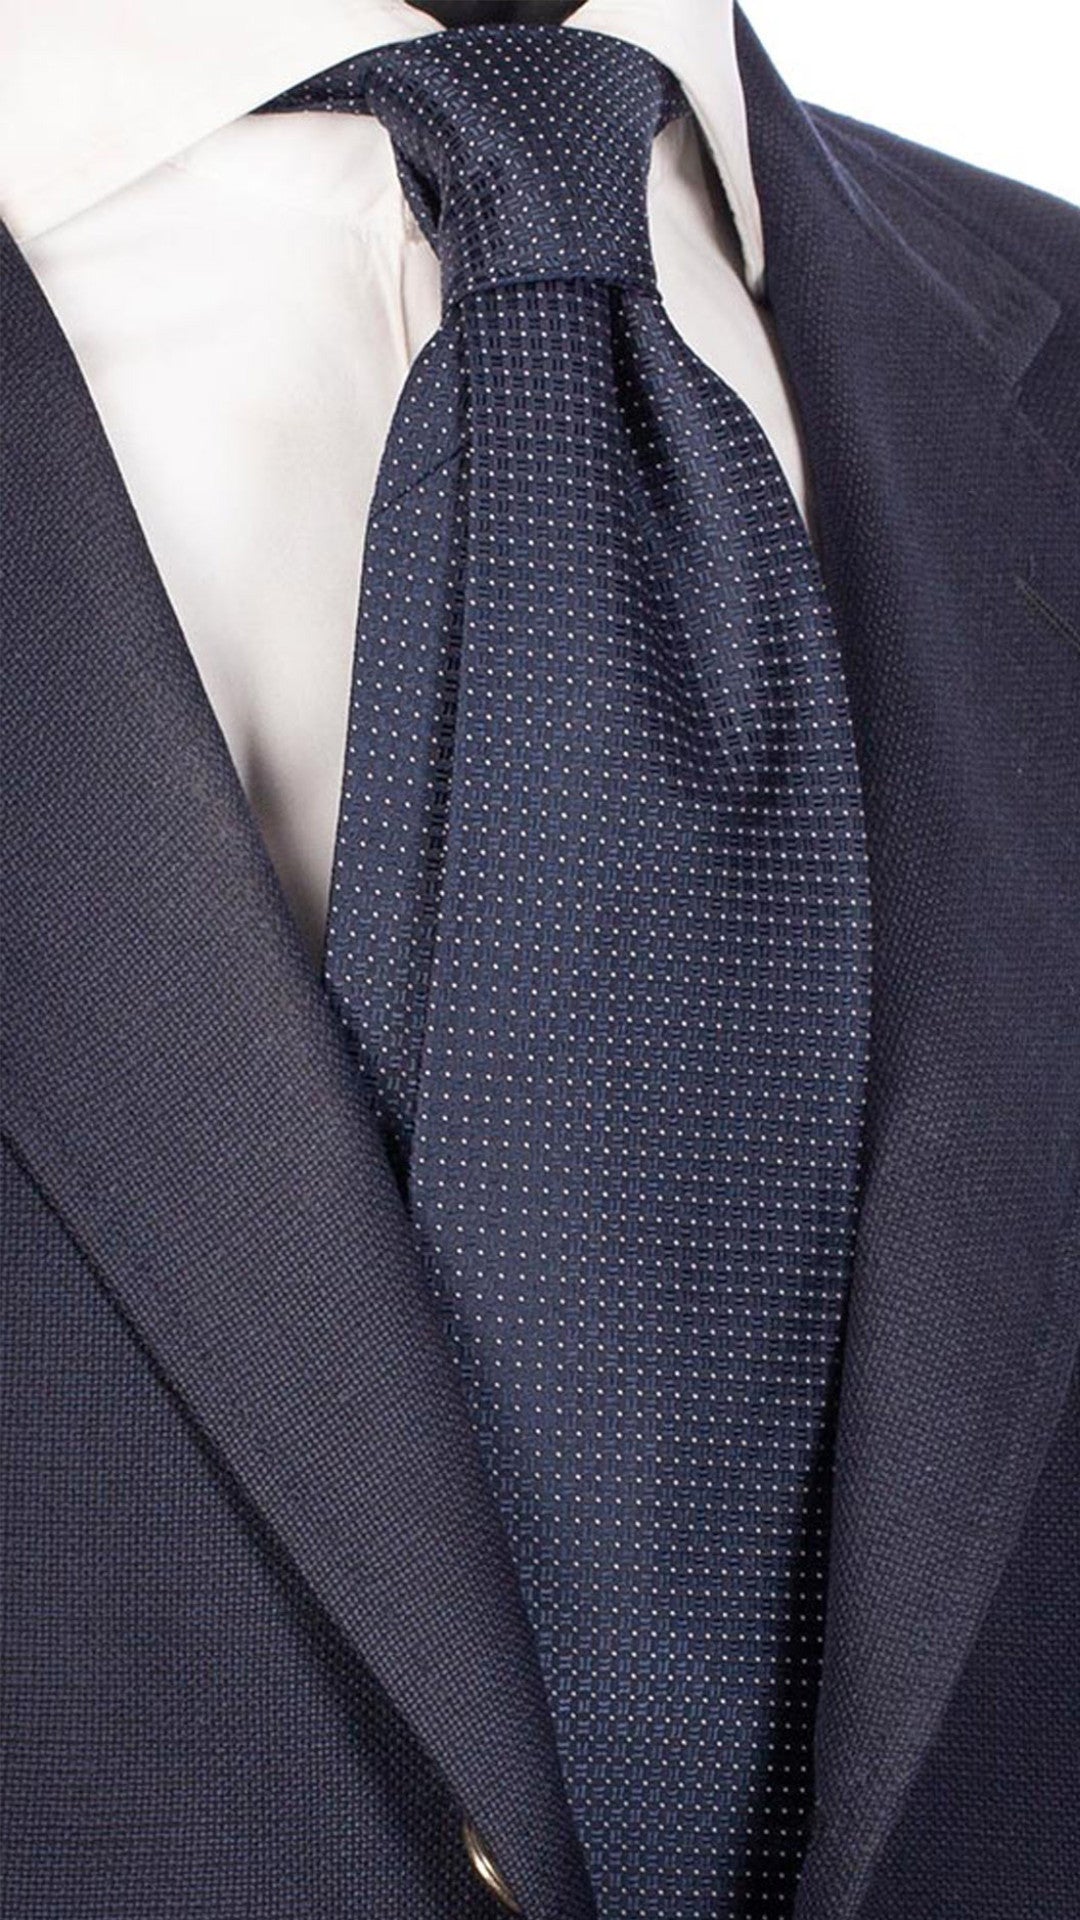 Cravatta da Cerimonia di Seta Blu Fantasia Tono su Tono Bianco CY5068 Made in Italy Graffeo Cravatte